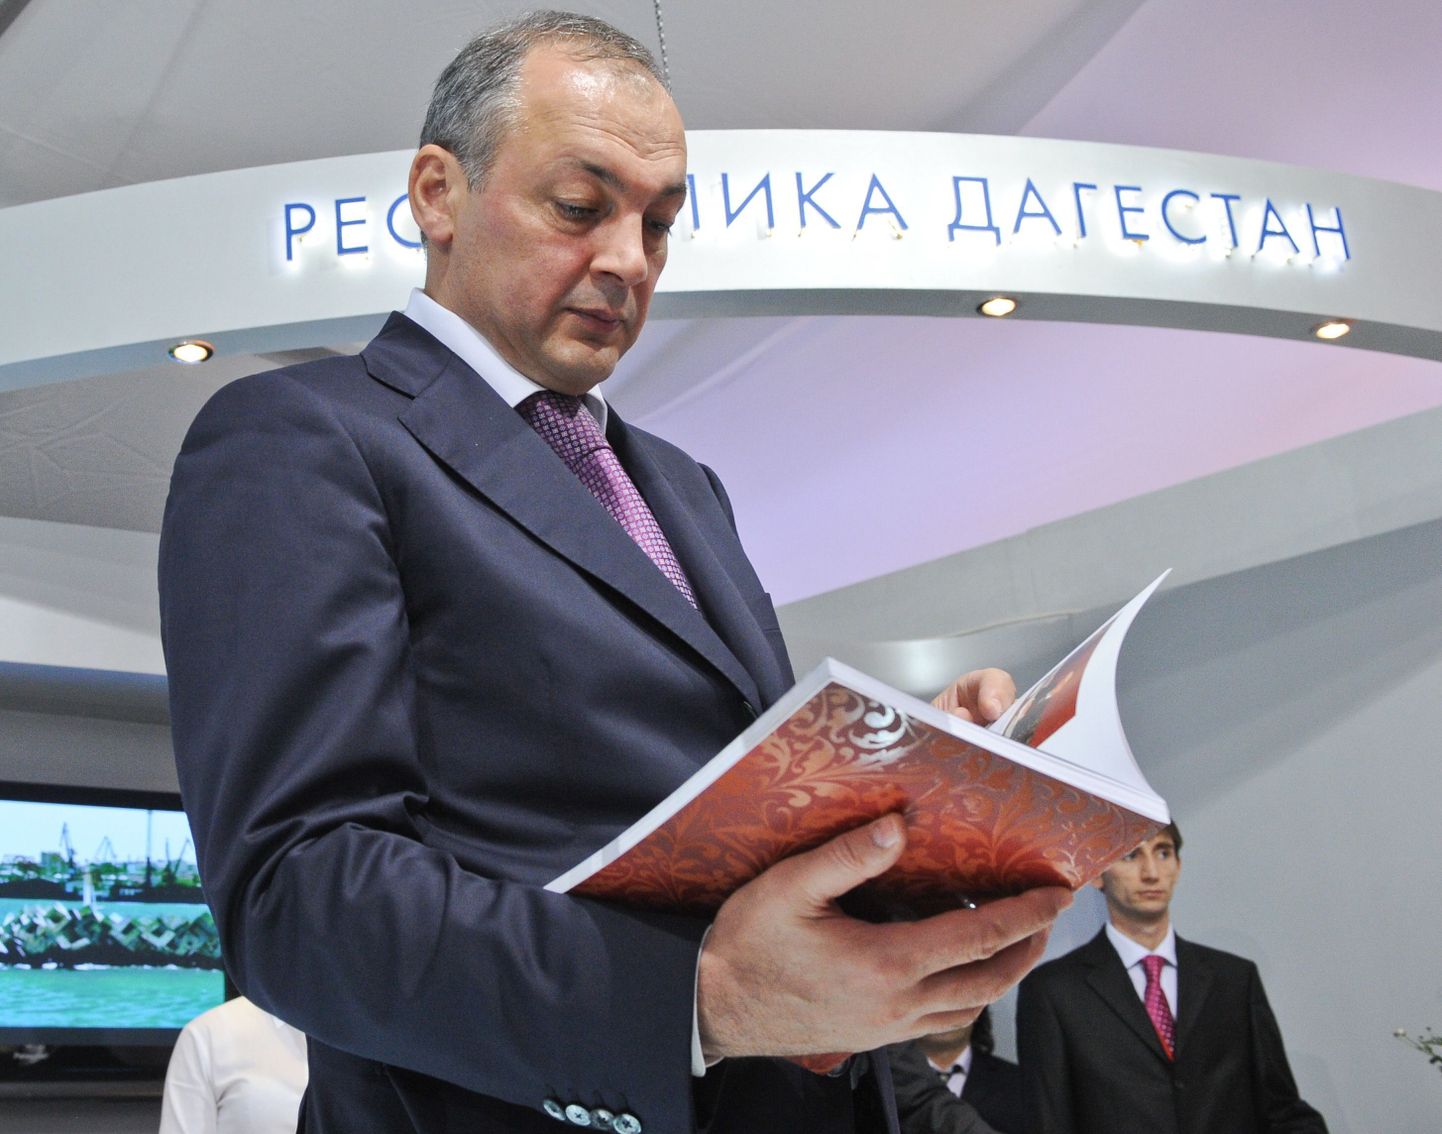 Dagestani president Magomedsalam Magomedov soovib 2018. aasta noorteolümpia korraldusõigust Dagestanile.